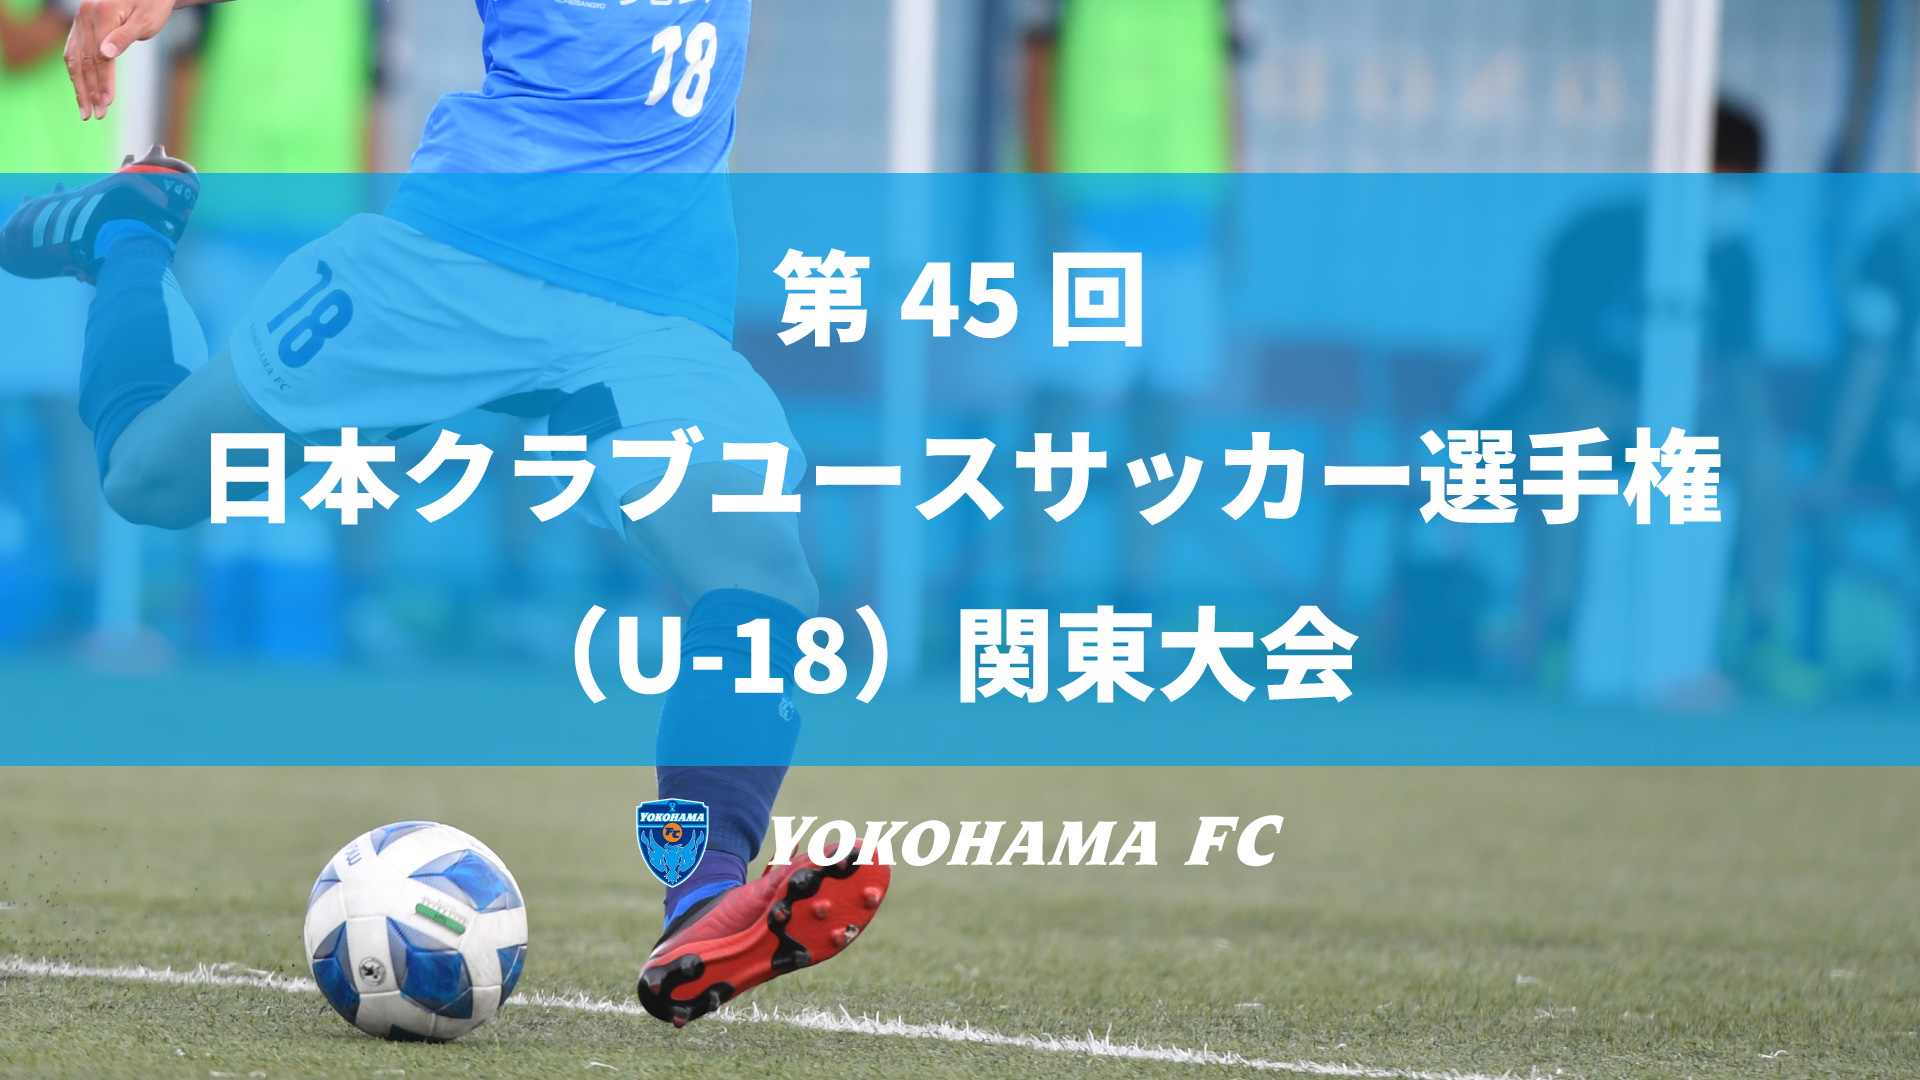 ユース 第45 回 日本クラブユースサッカー選手権 U 18 関東大会ノックアウトステージ1回戦のお知らせ 横浜fcオフィシャルウェブサイト